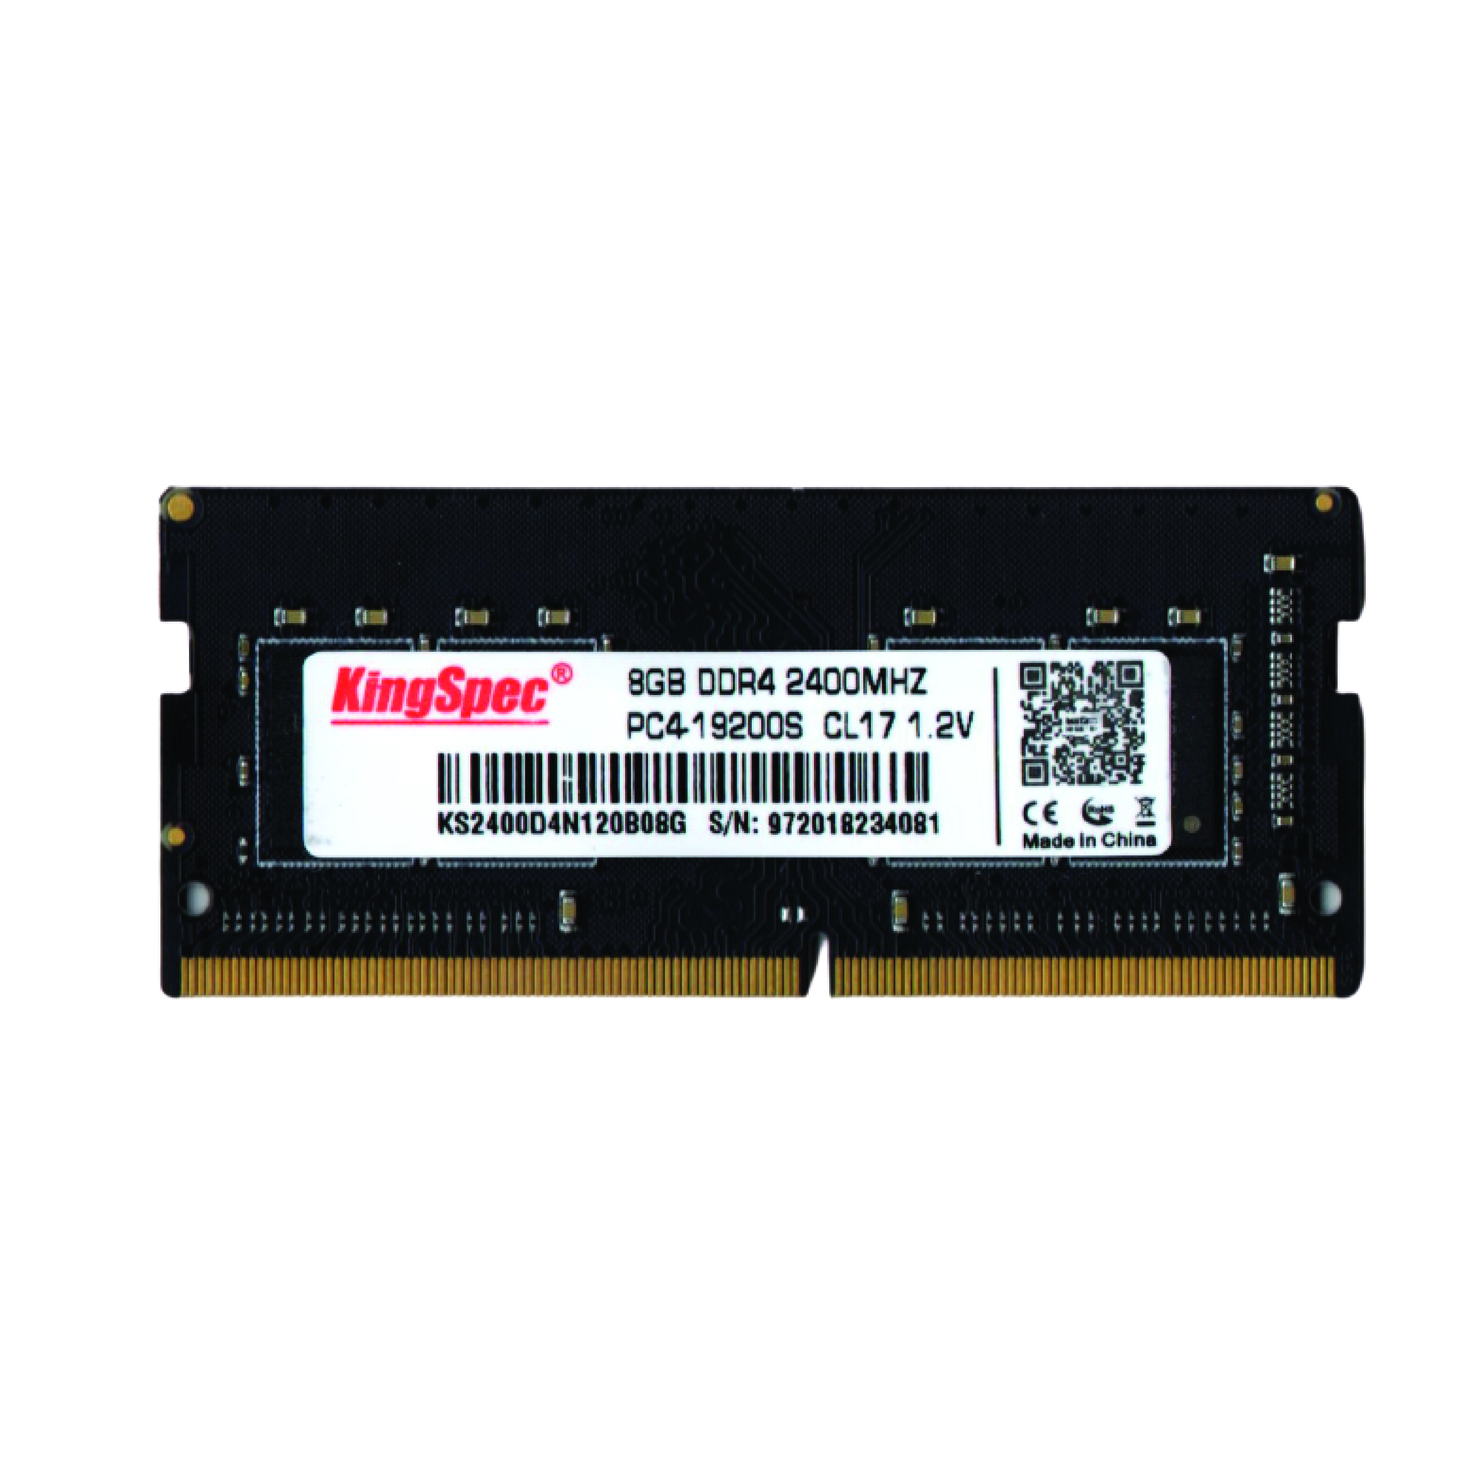 رم لپ تاپ DDR4 تک کاناله 2400 مگاهرتز CL17 کینگ اسپک مدل 19200s ظرفیت 8 گیگابایت